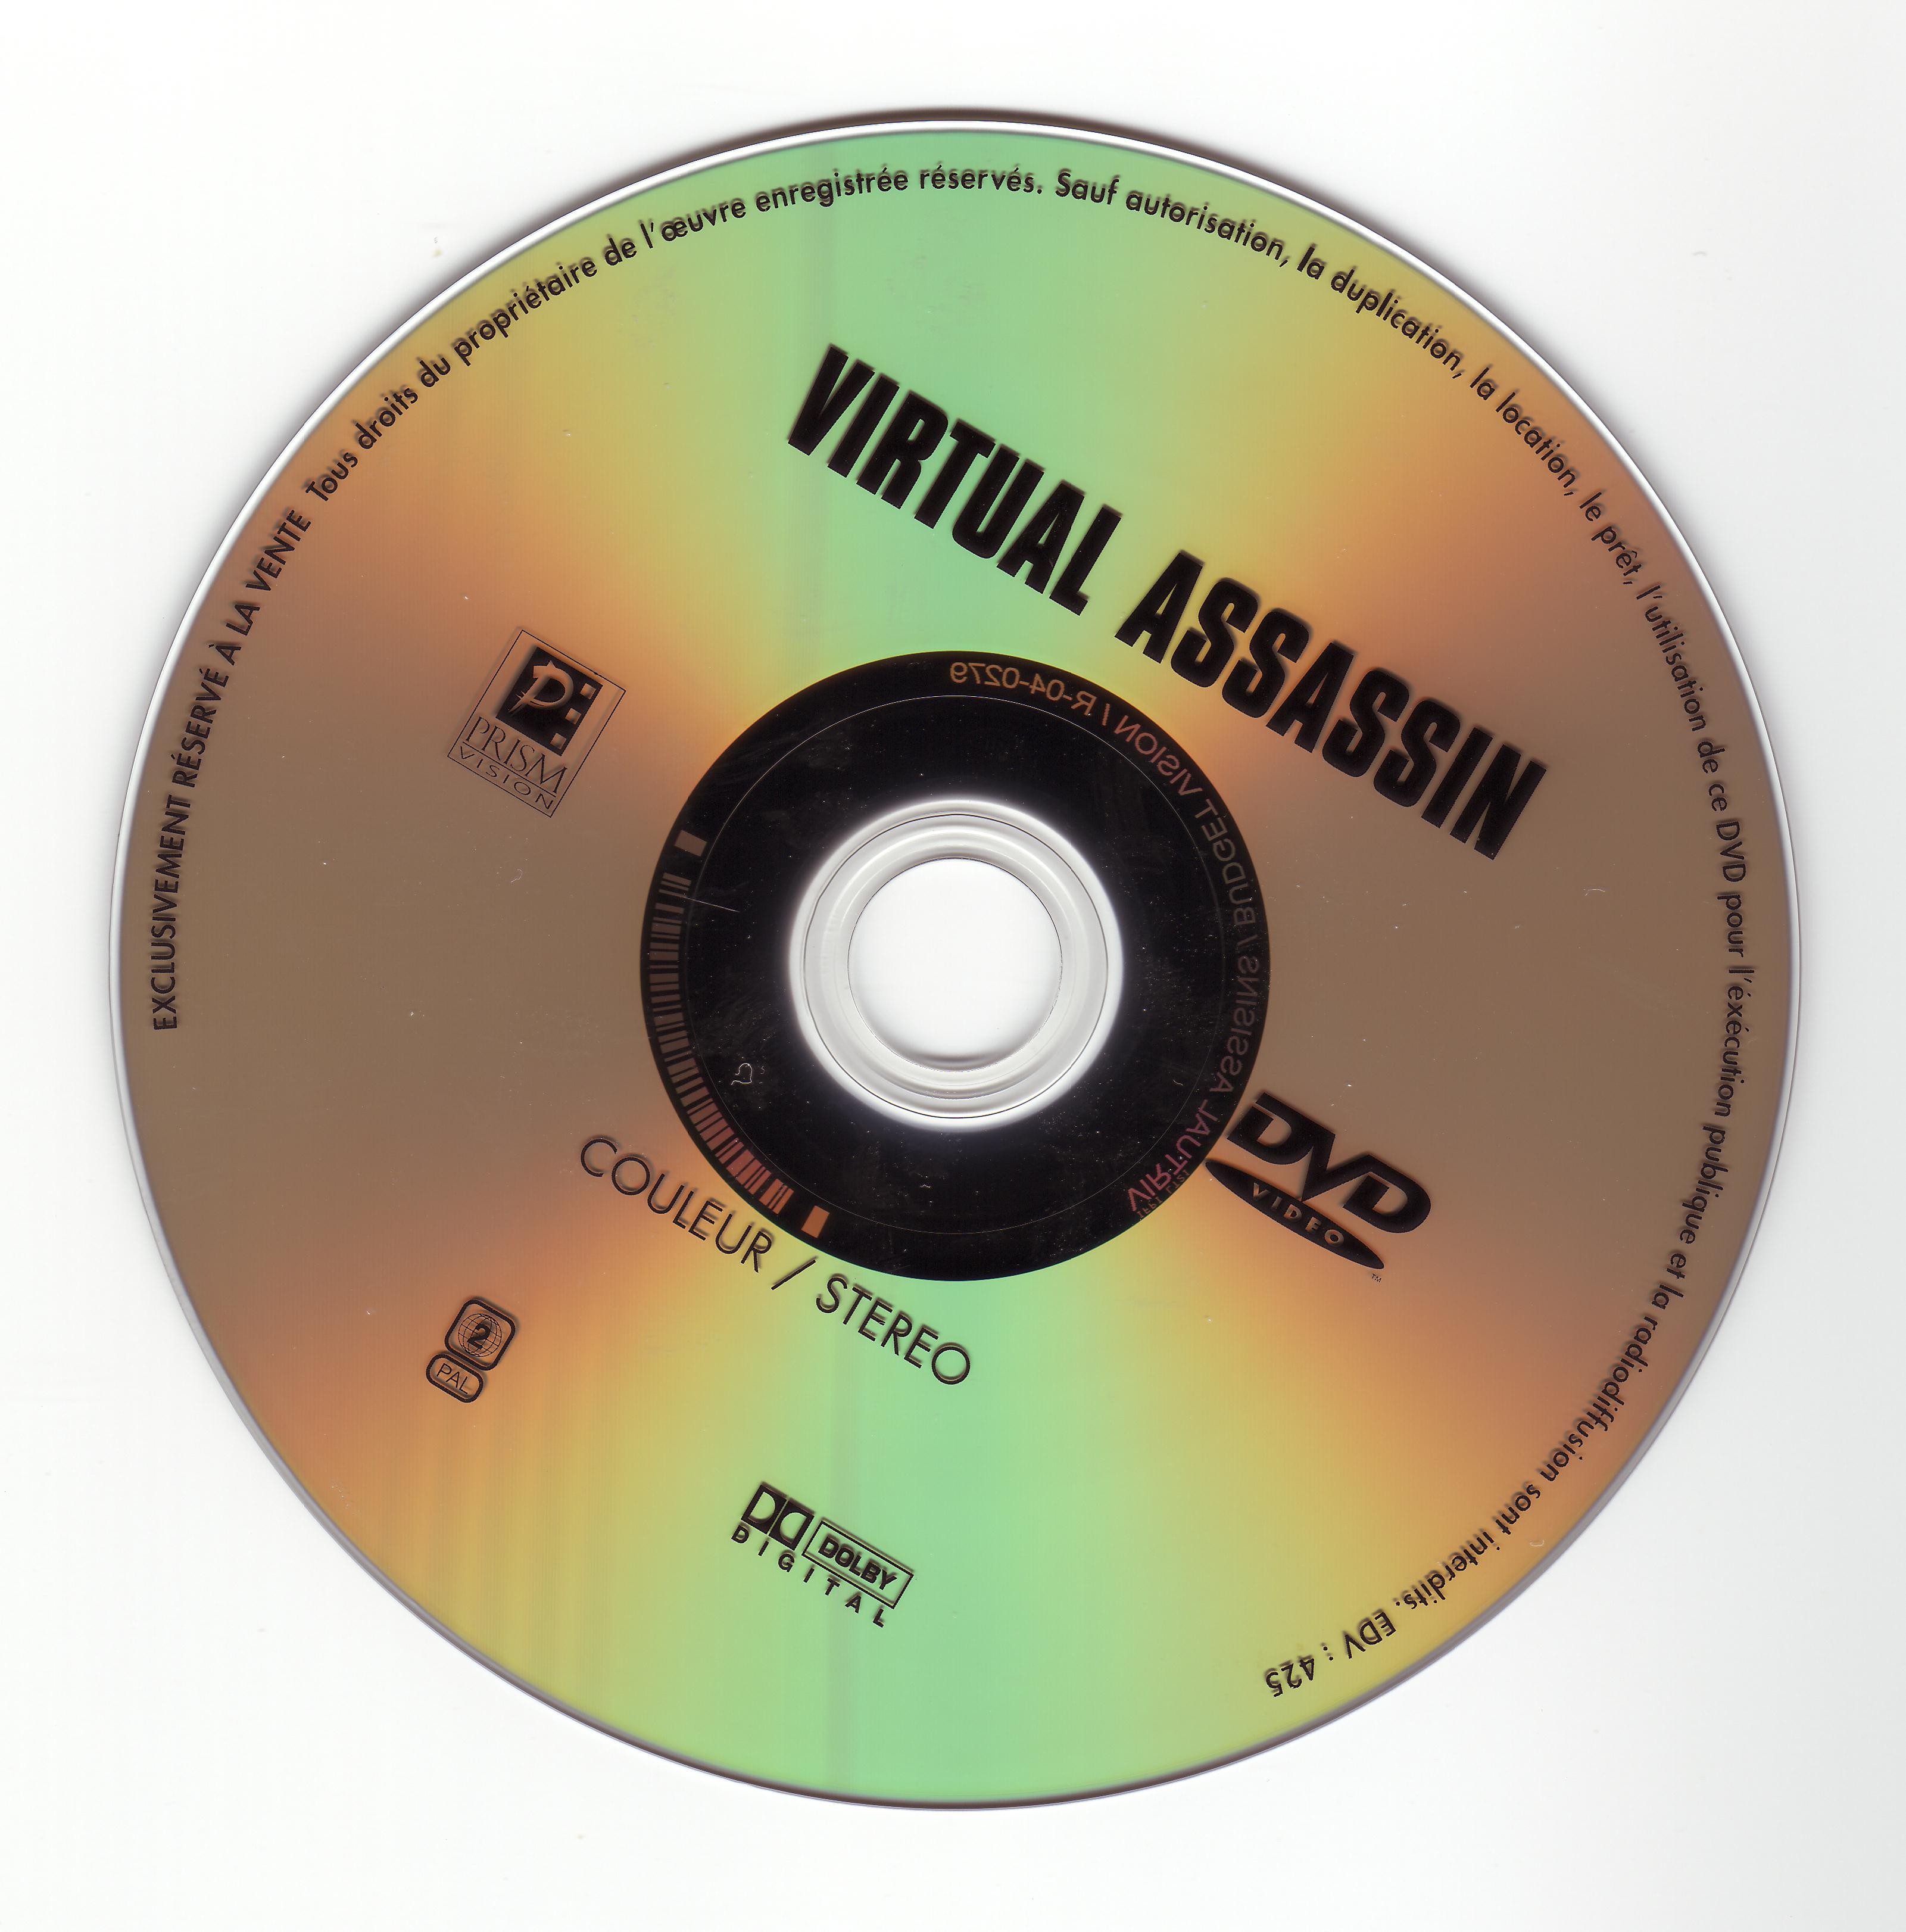 Virtual assassin